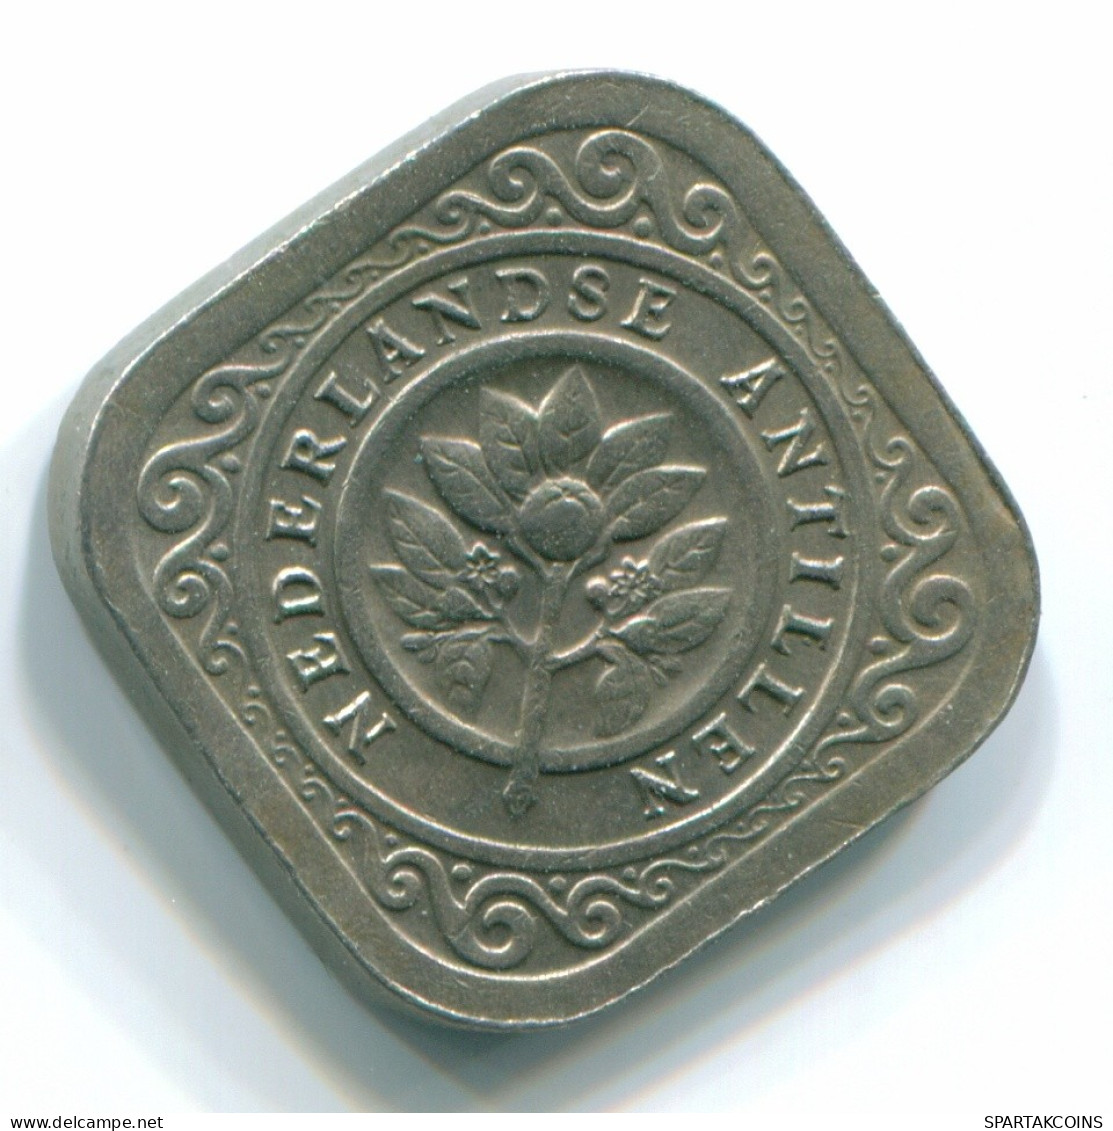 5 CENTS 1970 NIEDERLÄNDISCHE ANTILLEN Nickel Koloniale Münze #S12490.D.A - Antillas Neerlandesas